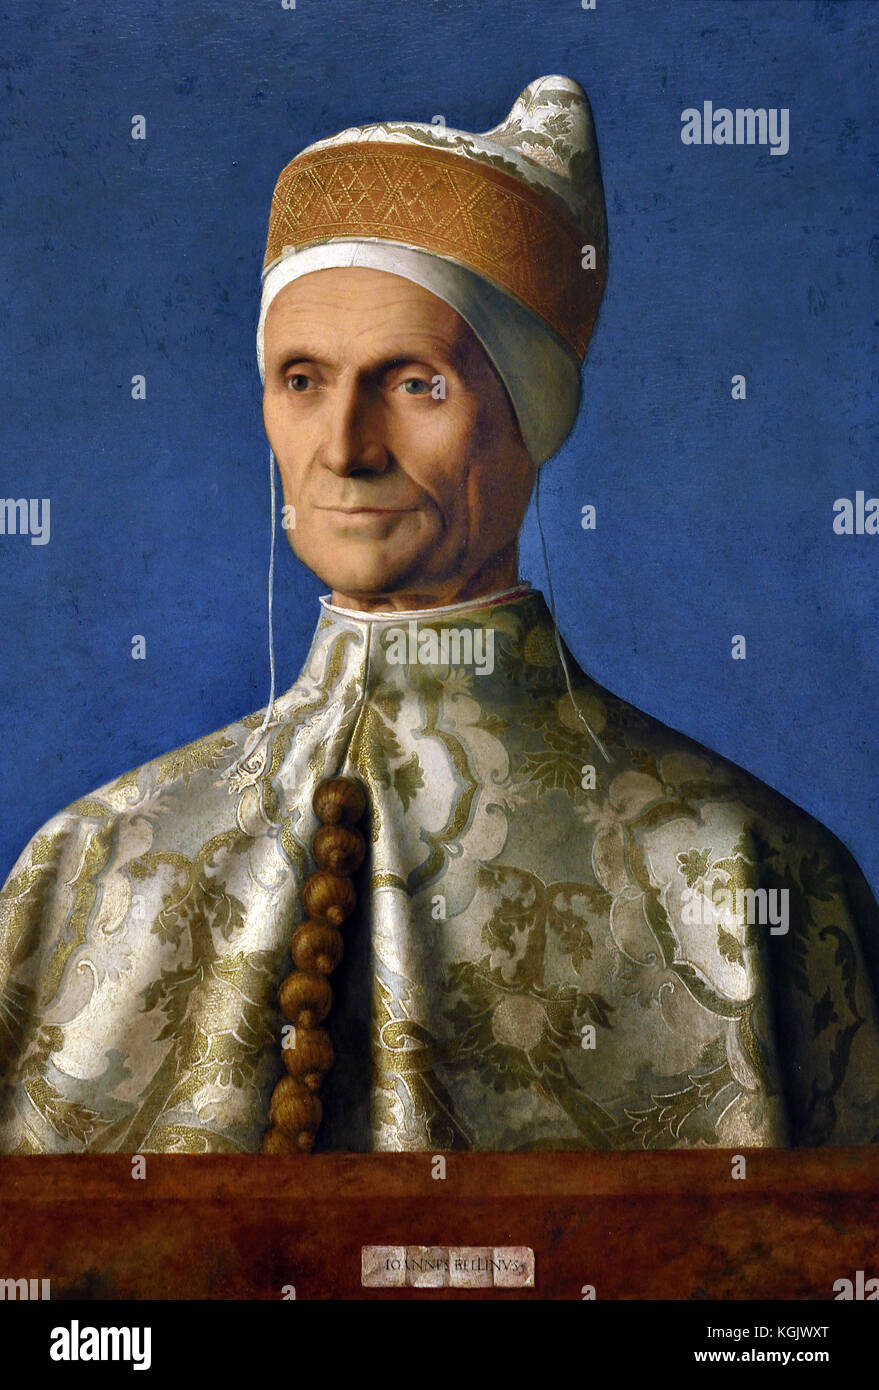 Le doge Leonardo Loredan 1501-2 Giovanni Bellini,1459 - 1516, était un peintre italien de la Renaissance, l'Italie, Leonardo Loredan était.( le Doge de Venise à partir de 1501-21. Il est montré ici portant ses robes d'état pour ce portrait officiel. ) Banque D'Images